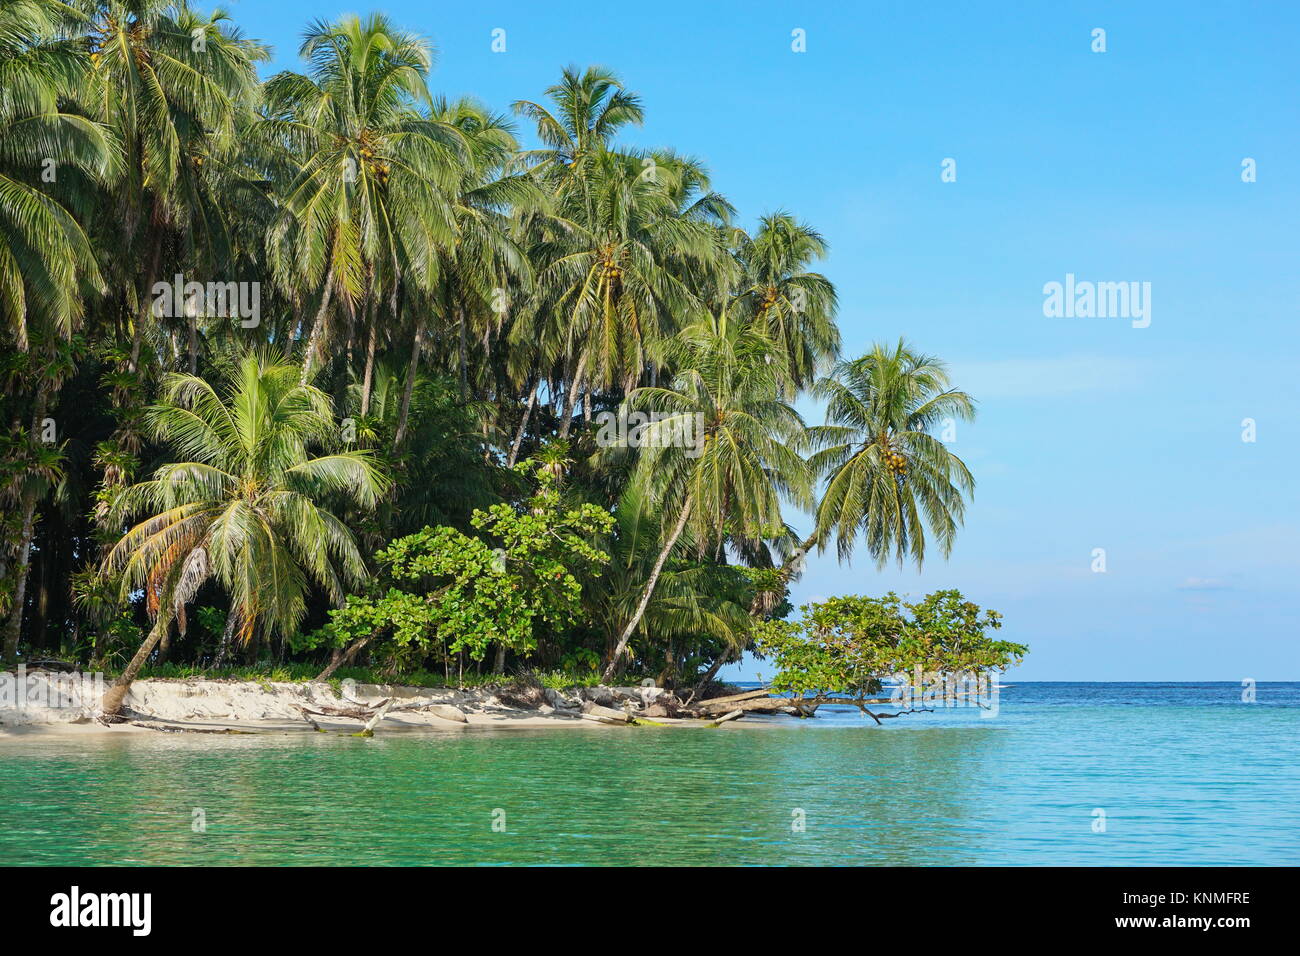 Jardins tropicaux de mer avec des cocotiers et d'amandiers, mer des Caraïbes, Bocas del Toro, PANAMA, Amérique Centrale Banque D'Images